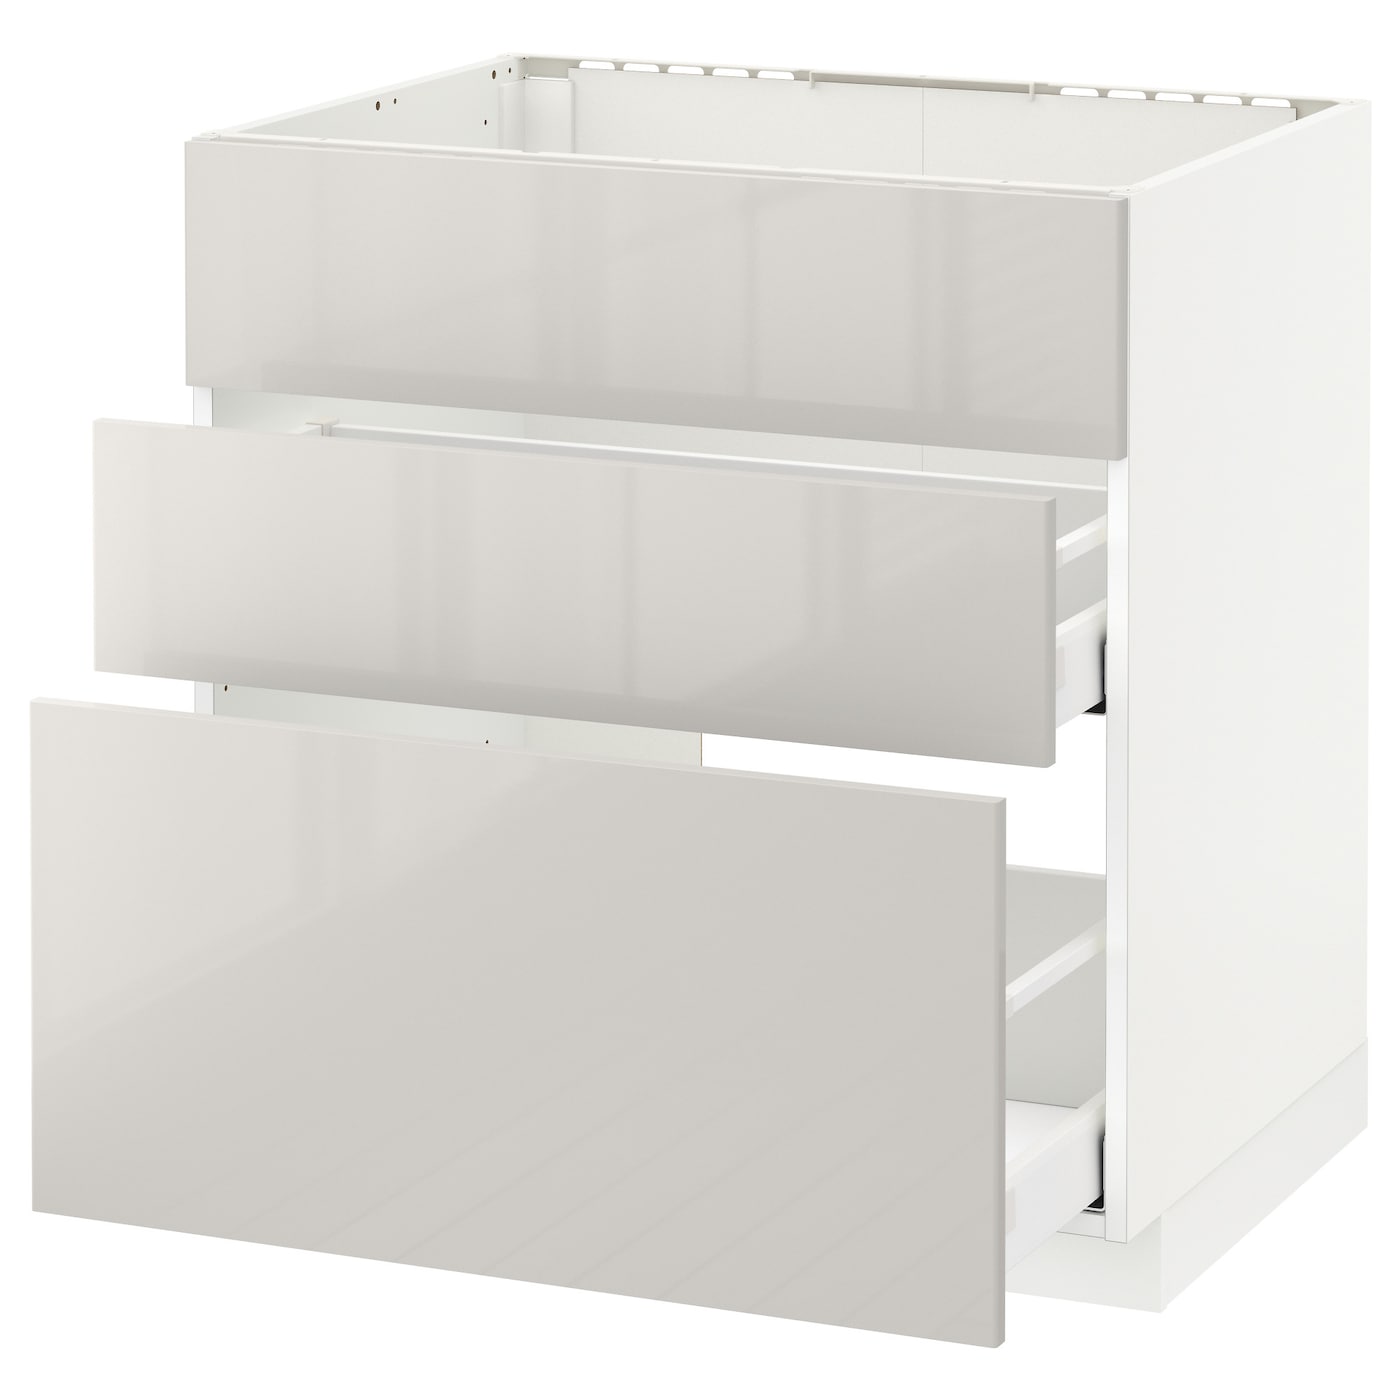 Напольный кухонный шкаф  - IKEA METOD MAXIMERA, 88x61,8x60см, белый/светло-серый, МЕТОД МАКСИМЕРА ИКЕА